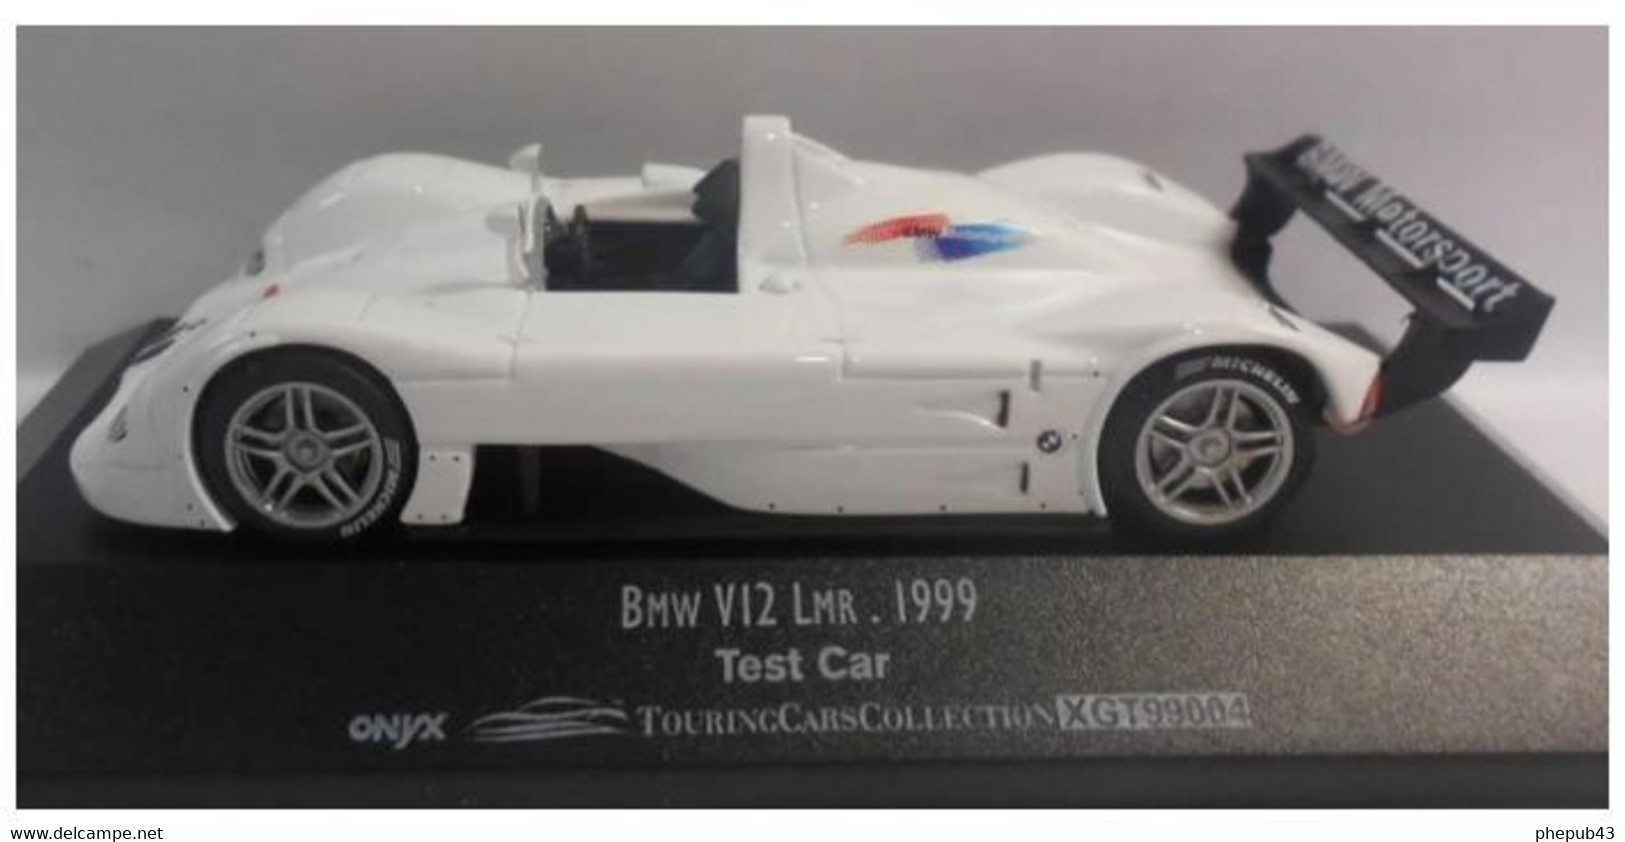 BMW V12 LMR - BMW Motorsport - Test Car - 1999 - White - Onyx - Onyx